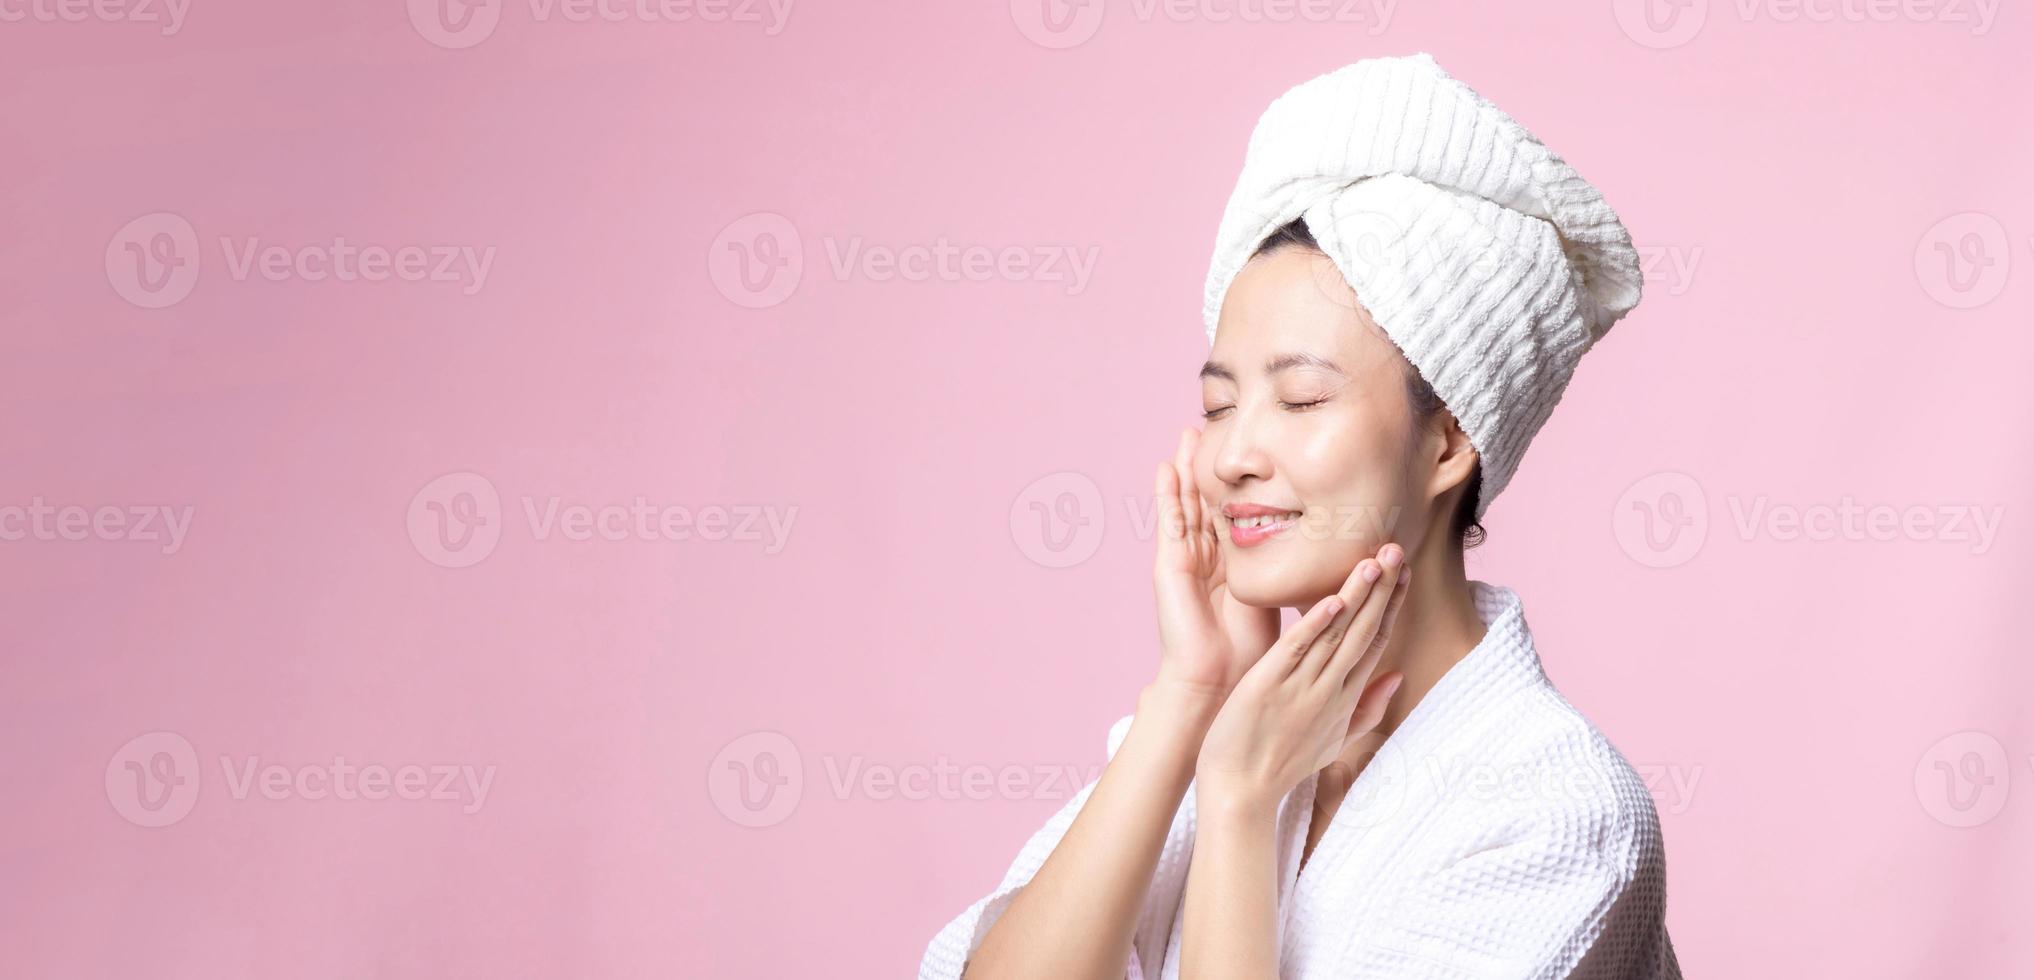 skön ung asiatisk kvinna Lycklig med rena ansikte hud i handduk och morgonrock, spa kostym på rosa bakgrund. hudvård, behandling, wellness terapi, ansiktsbehandling vård, skönhet kvinna hälsa, kosmetologi begrepp foto